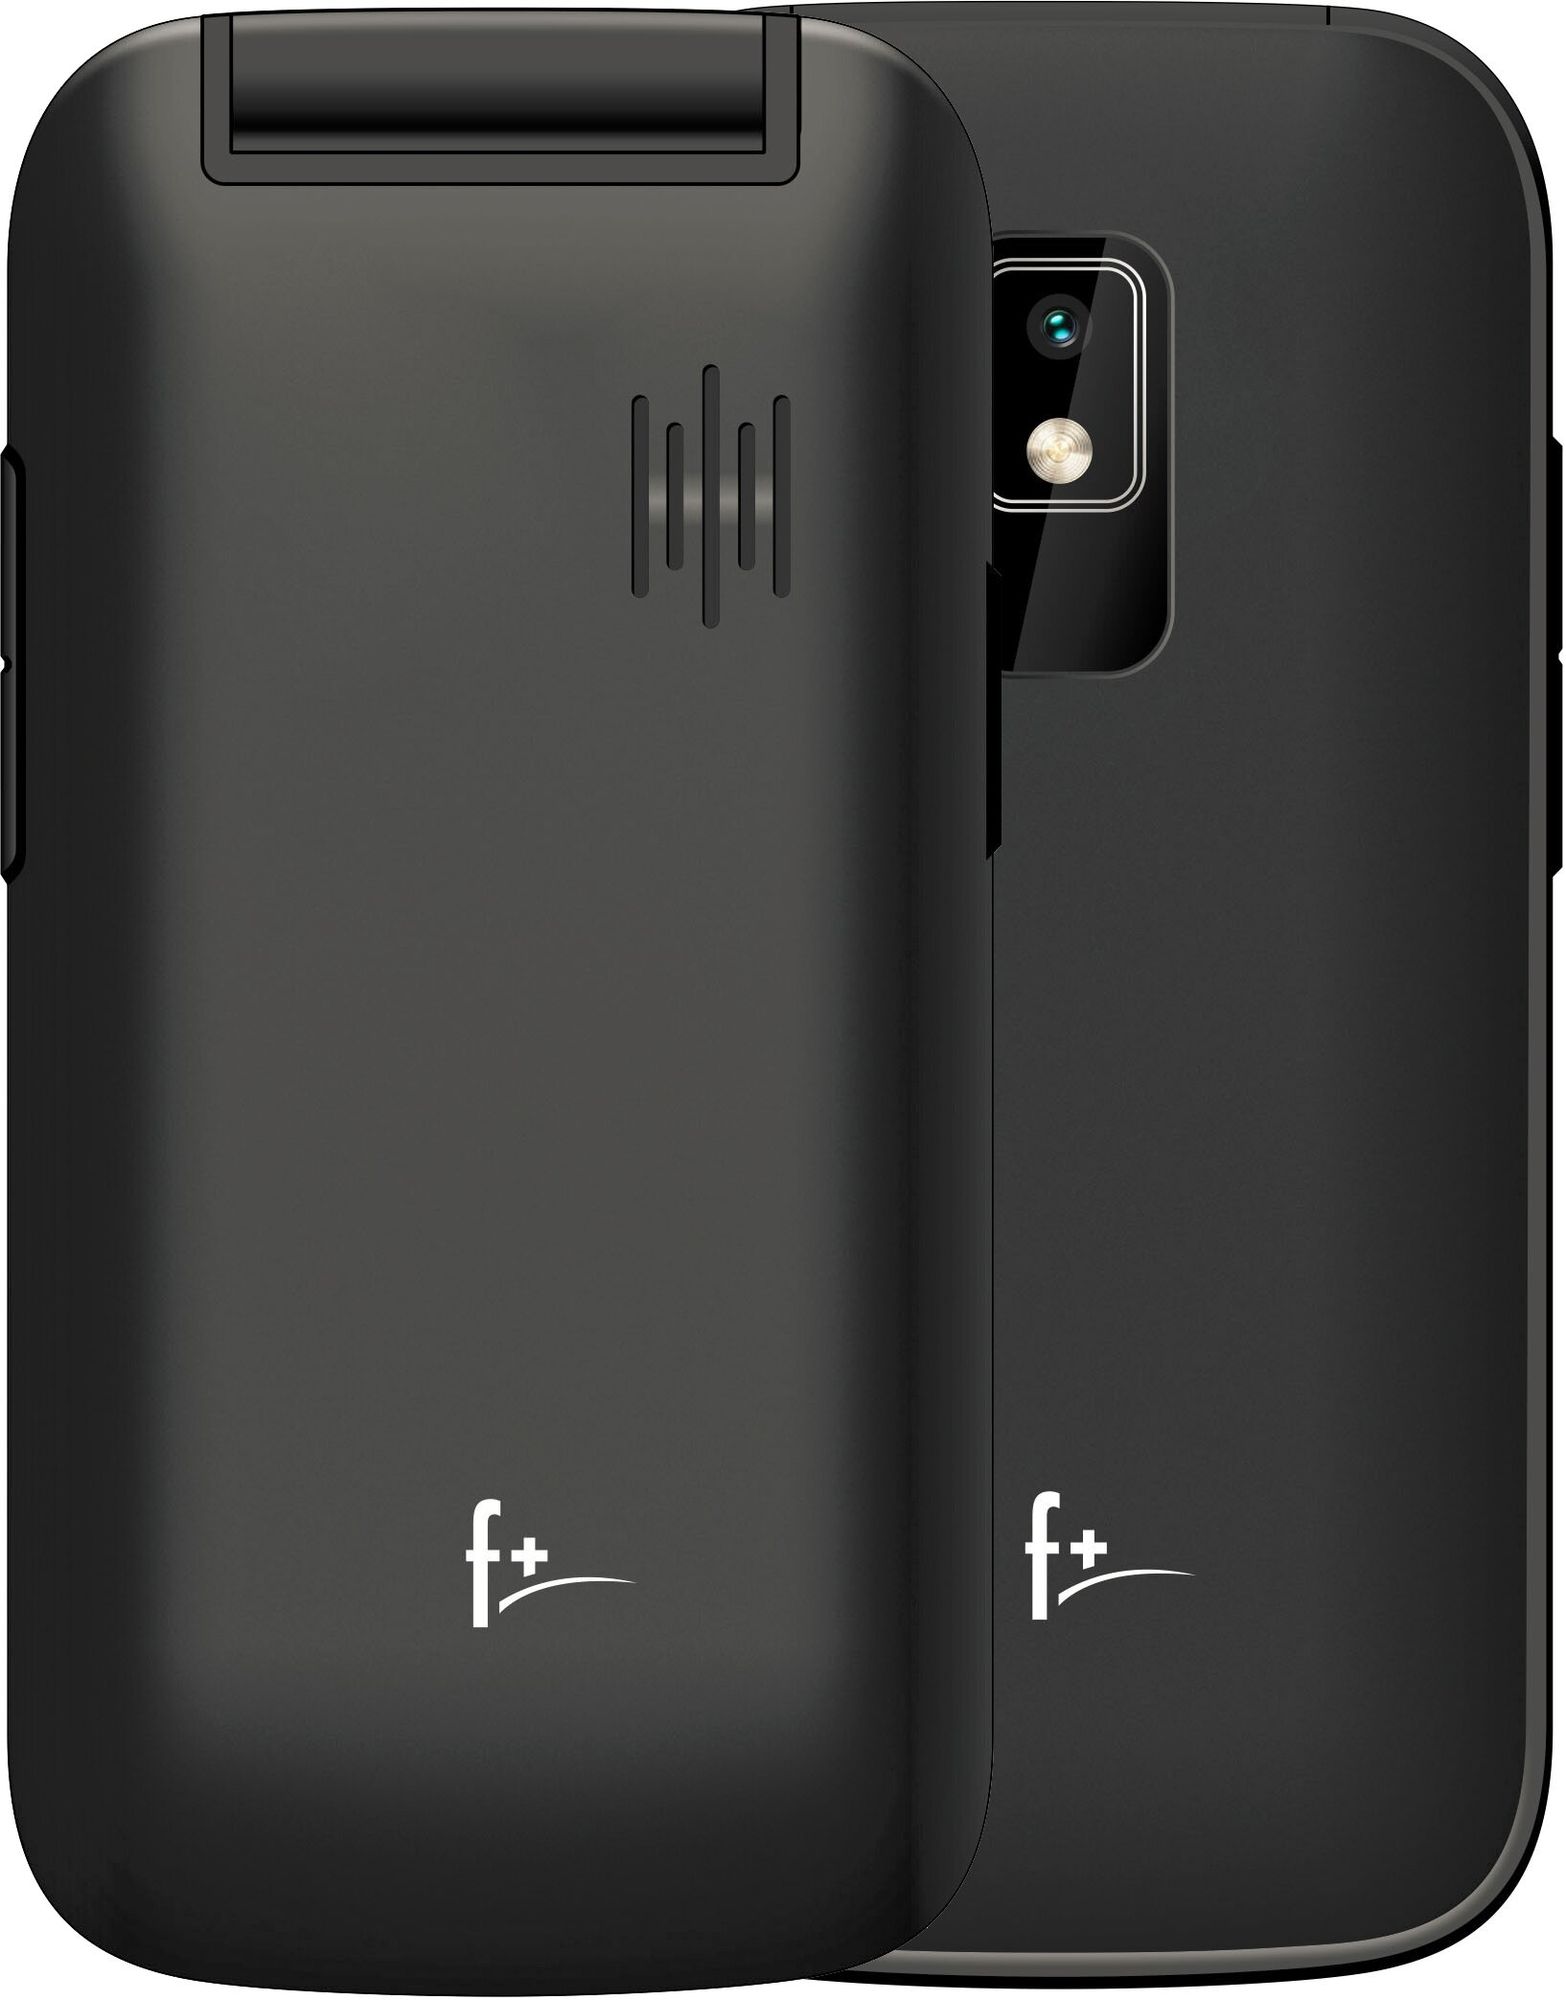 Мобильный телефон F+ Flip 240 Black цена и фото